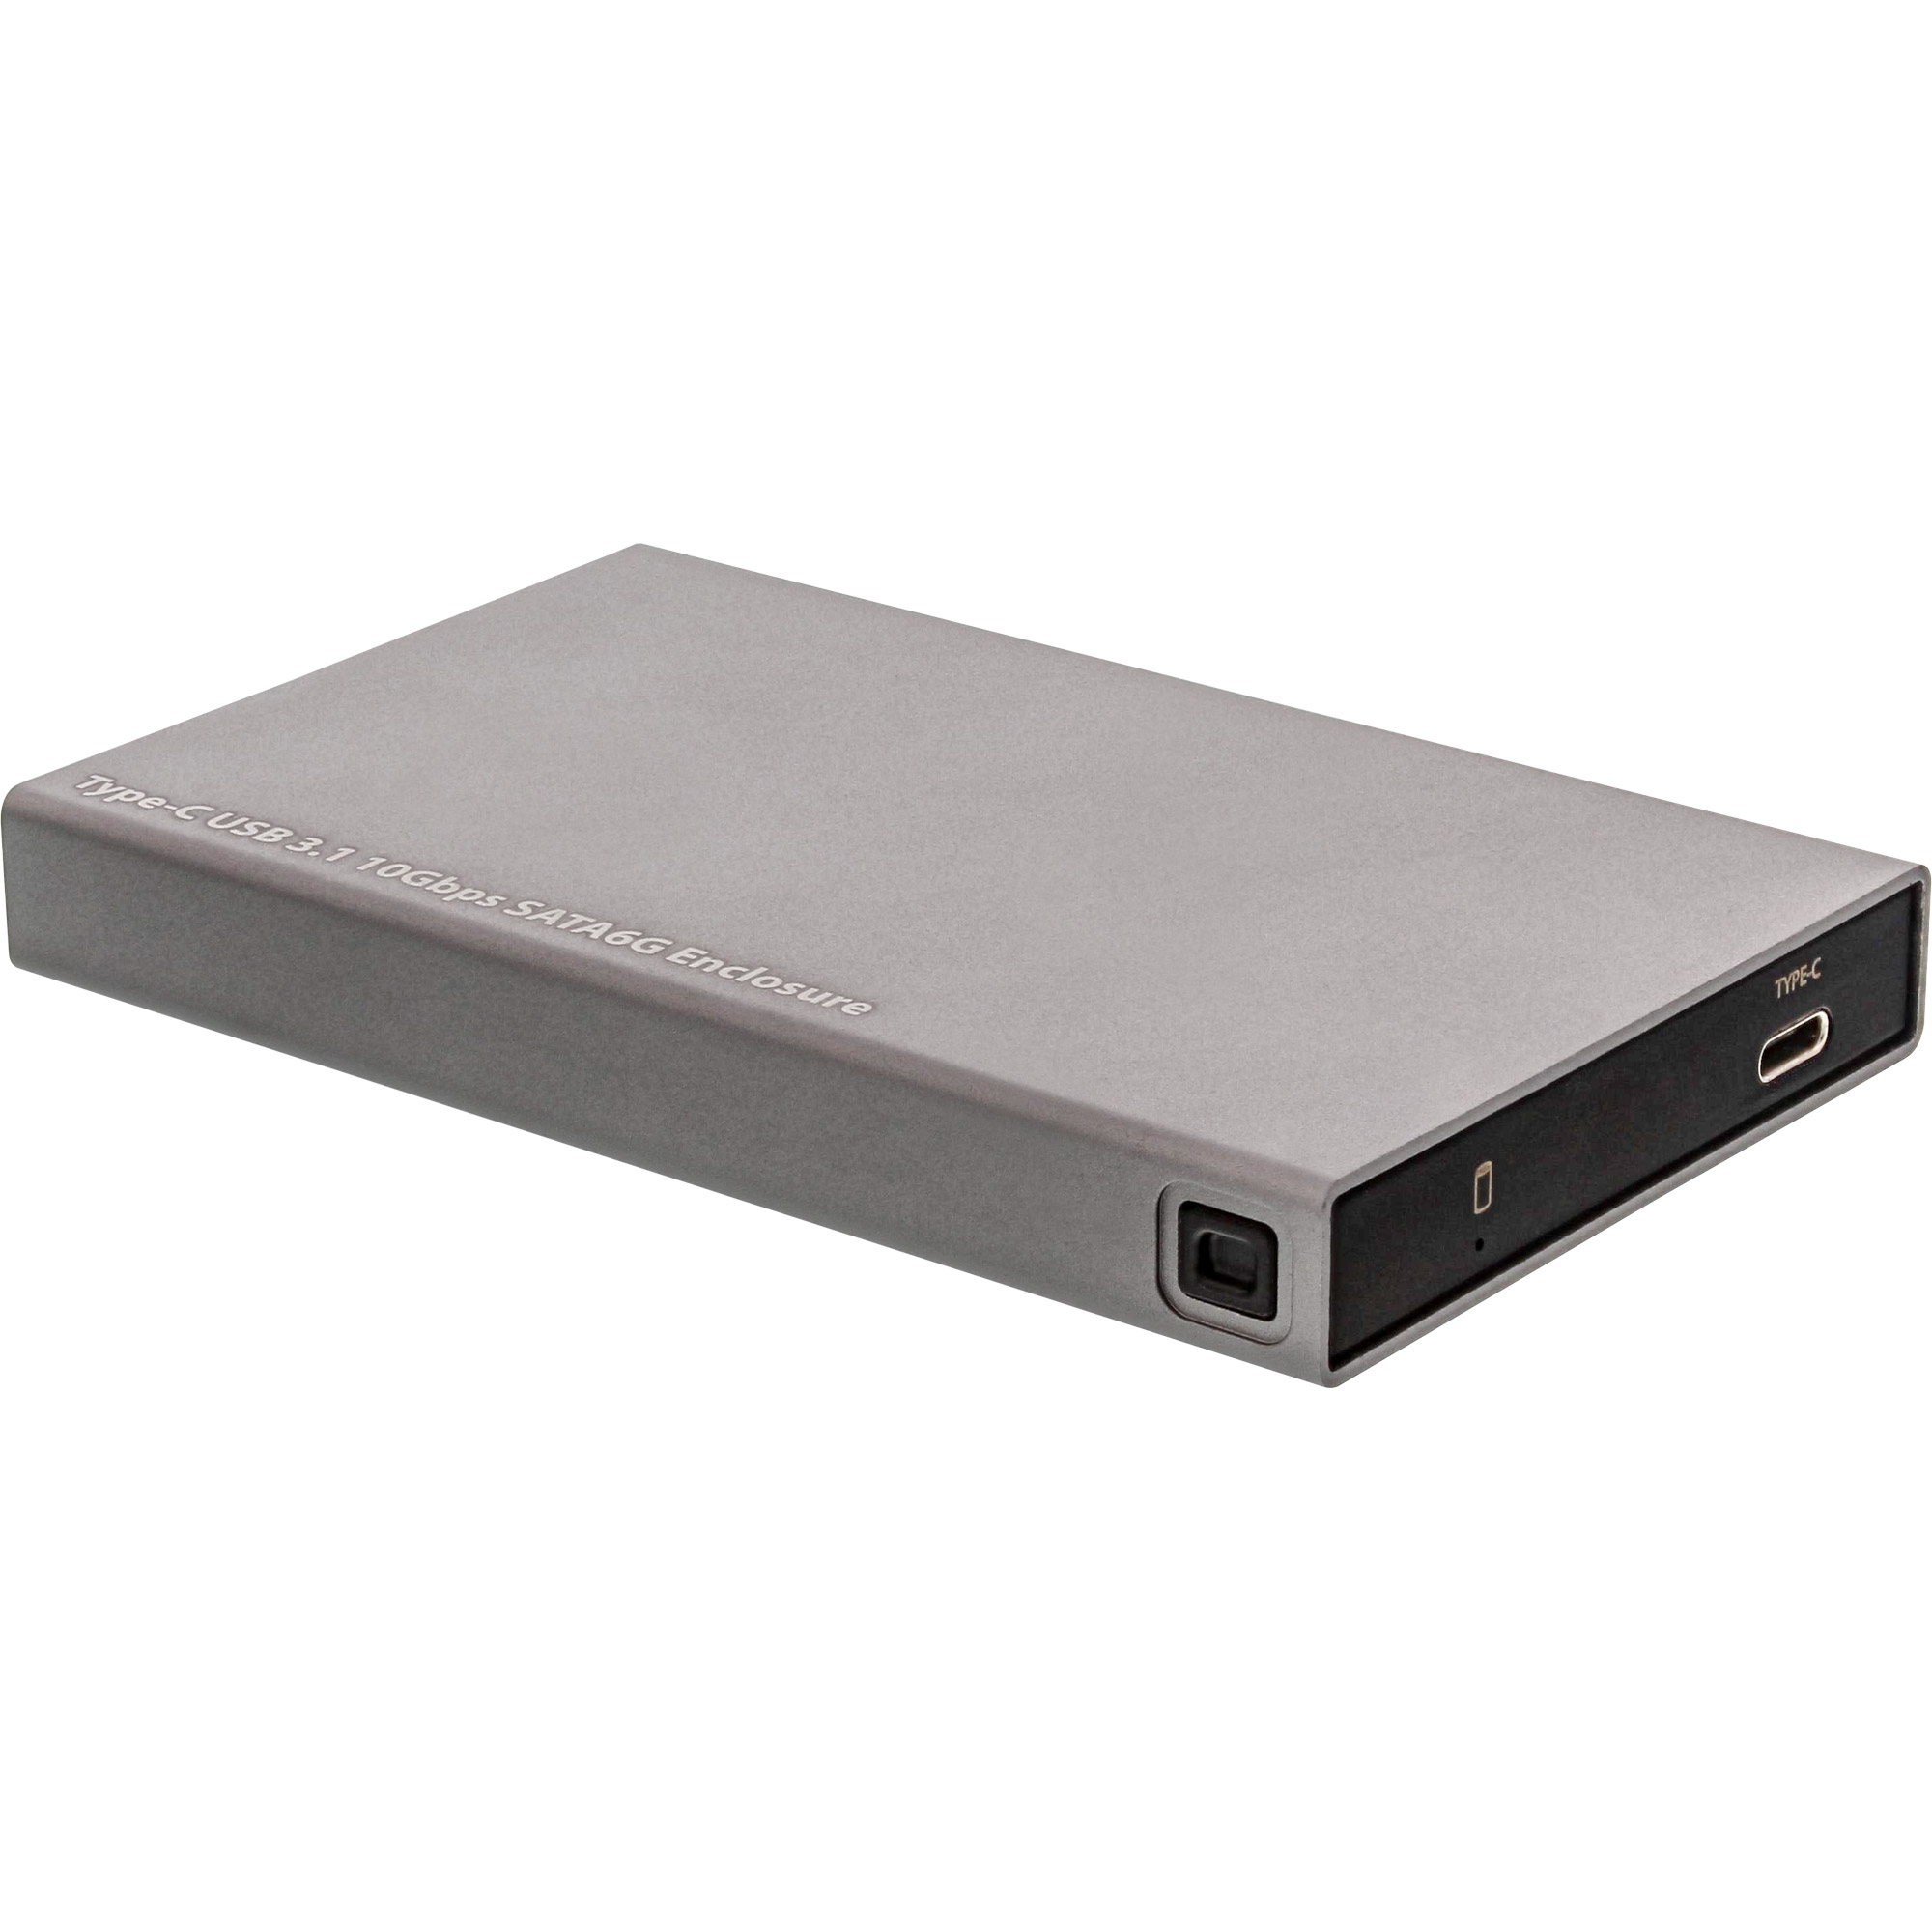 InLine® USB 3.1 Gehäuse für 6,35cm (2,5) 6G SATA-Festplatte / SSD, USB-C  Buchse, 2,5 Zoll / 6,35cm, HDD Gehäuse / externe HDD, Storage, Produkte